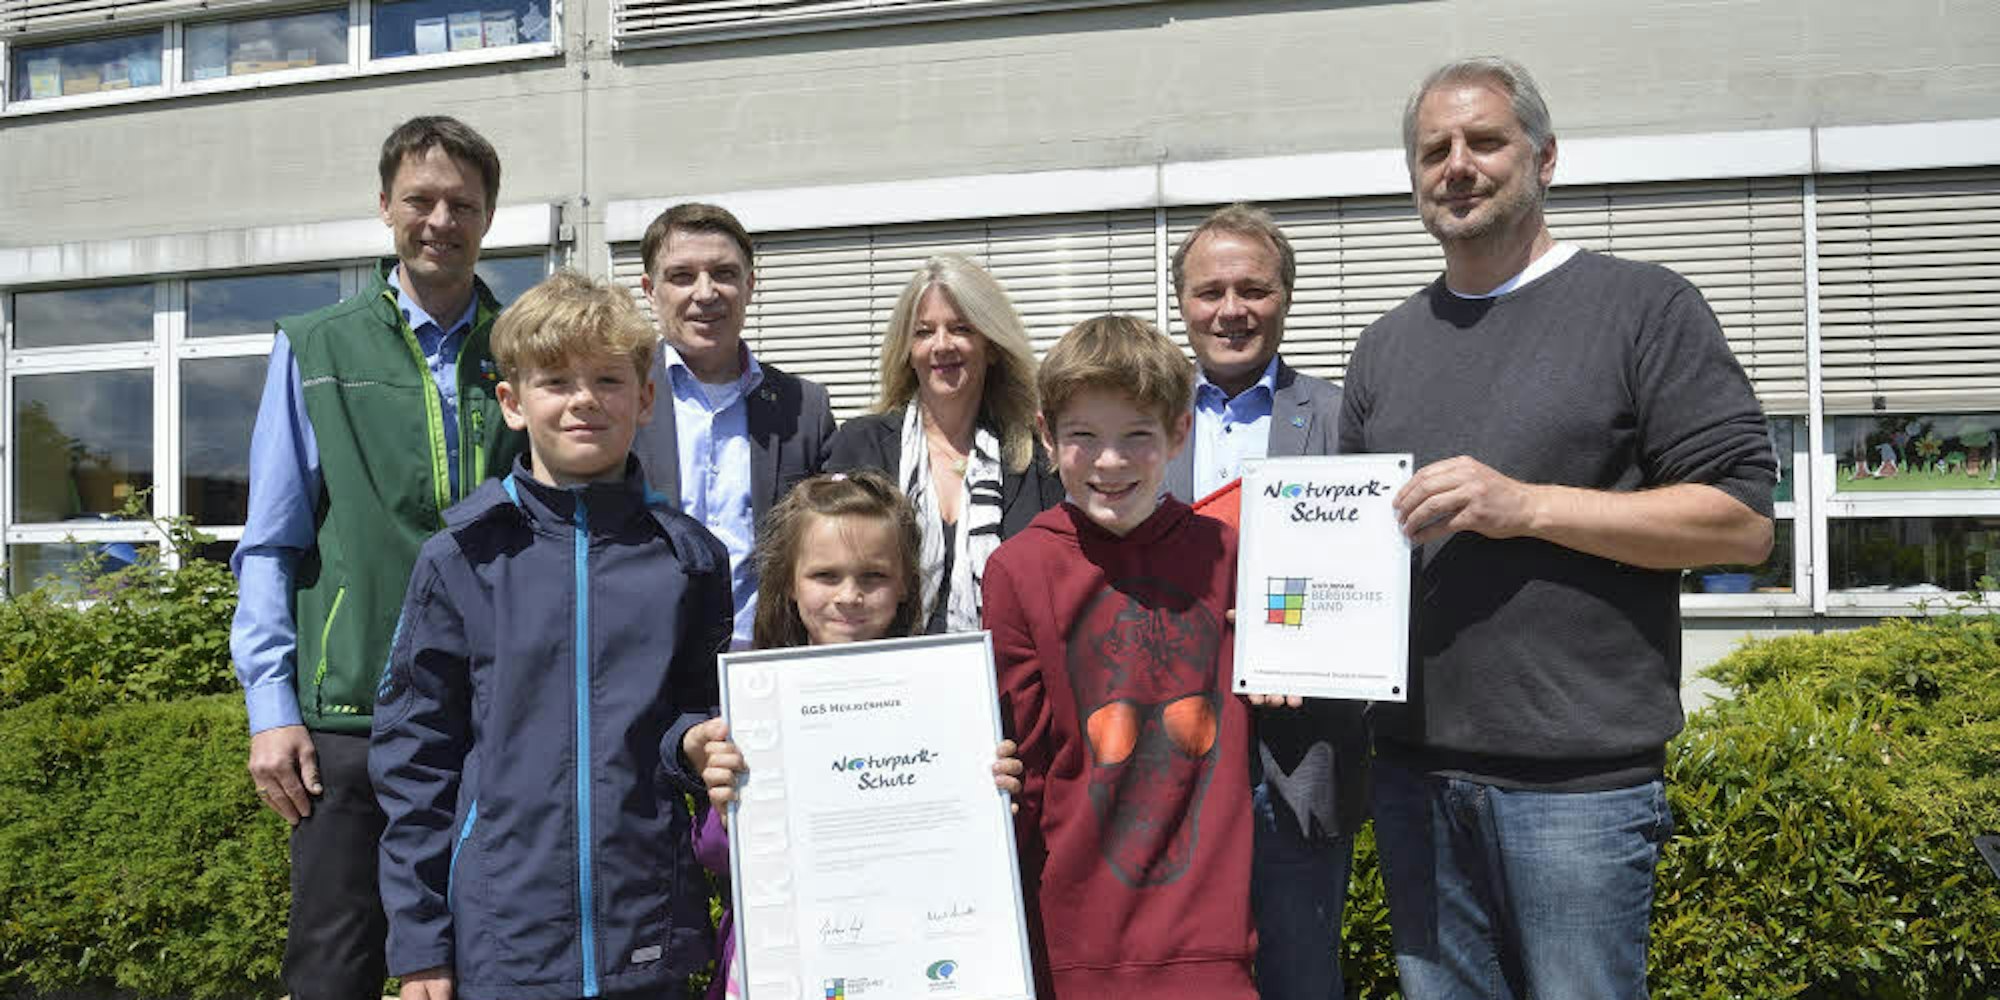 Stolz zeigen Schüler und Lehrer das Zertifikat als Naturparkschule. Auch Bürgermeister Jörg Weigt (2. v. r.) gratulierte.